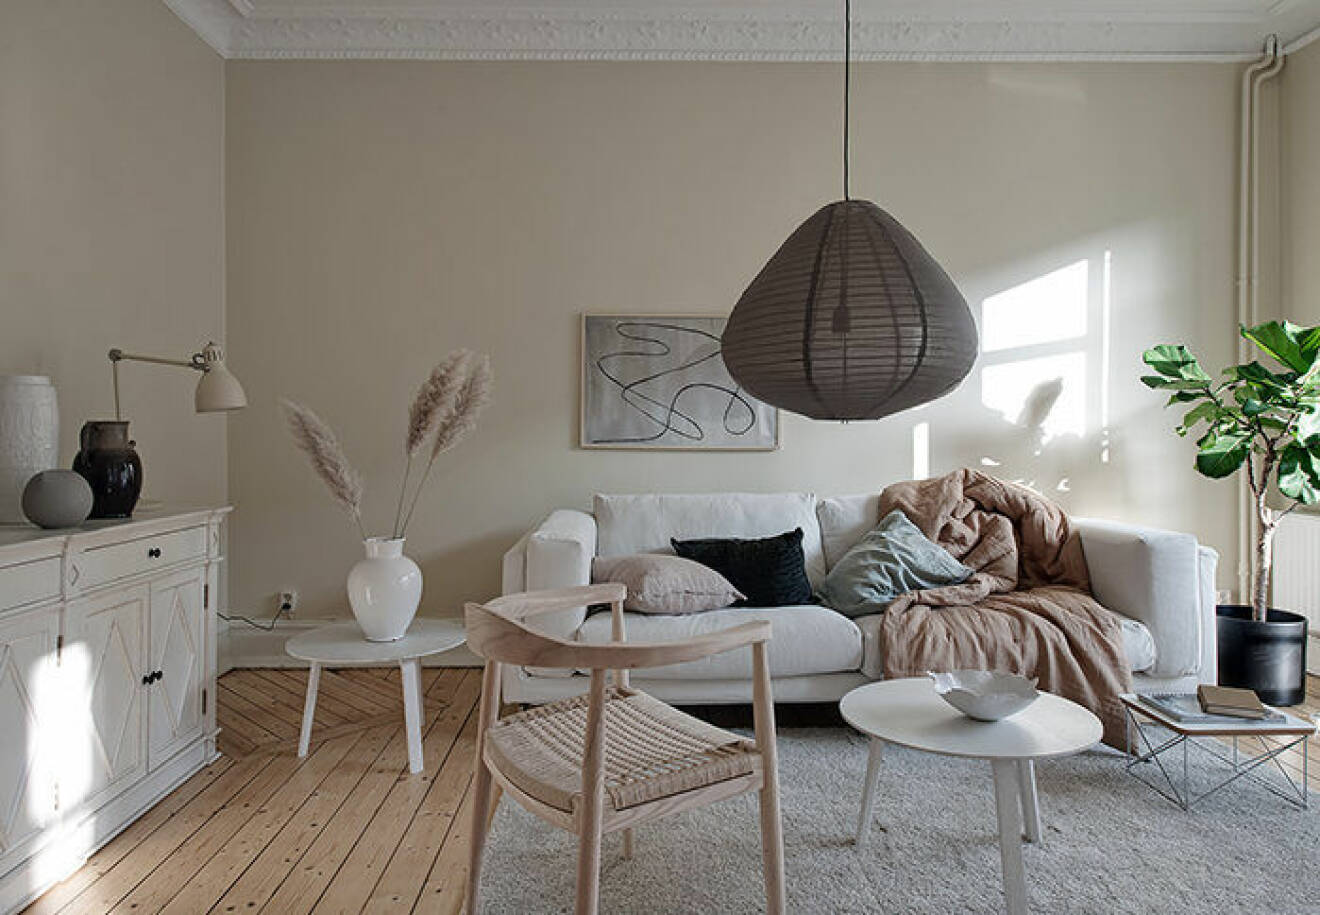 Beige och ljust i den här stilfulla lägenheten i Göteborg